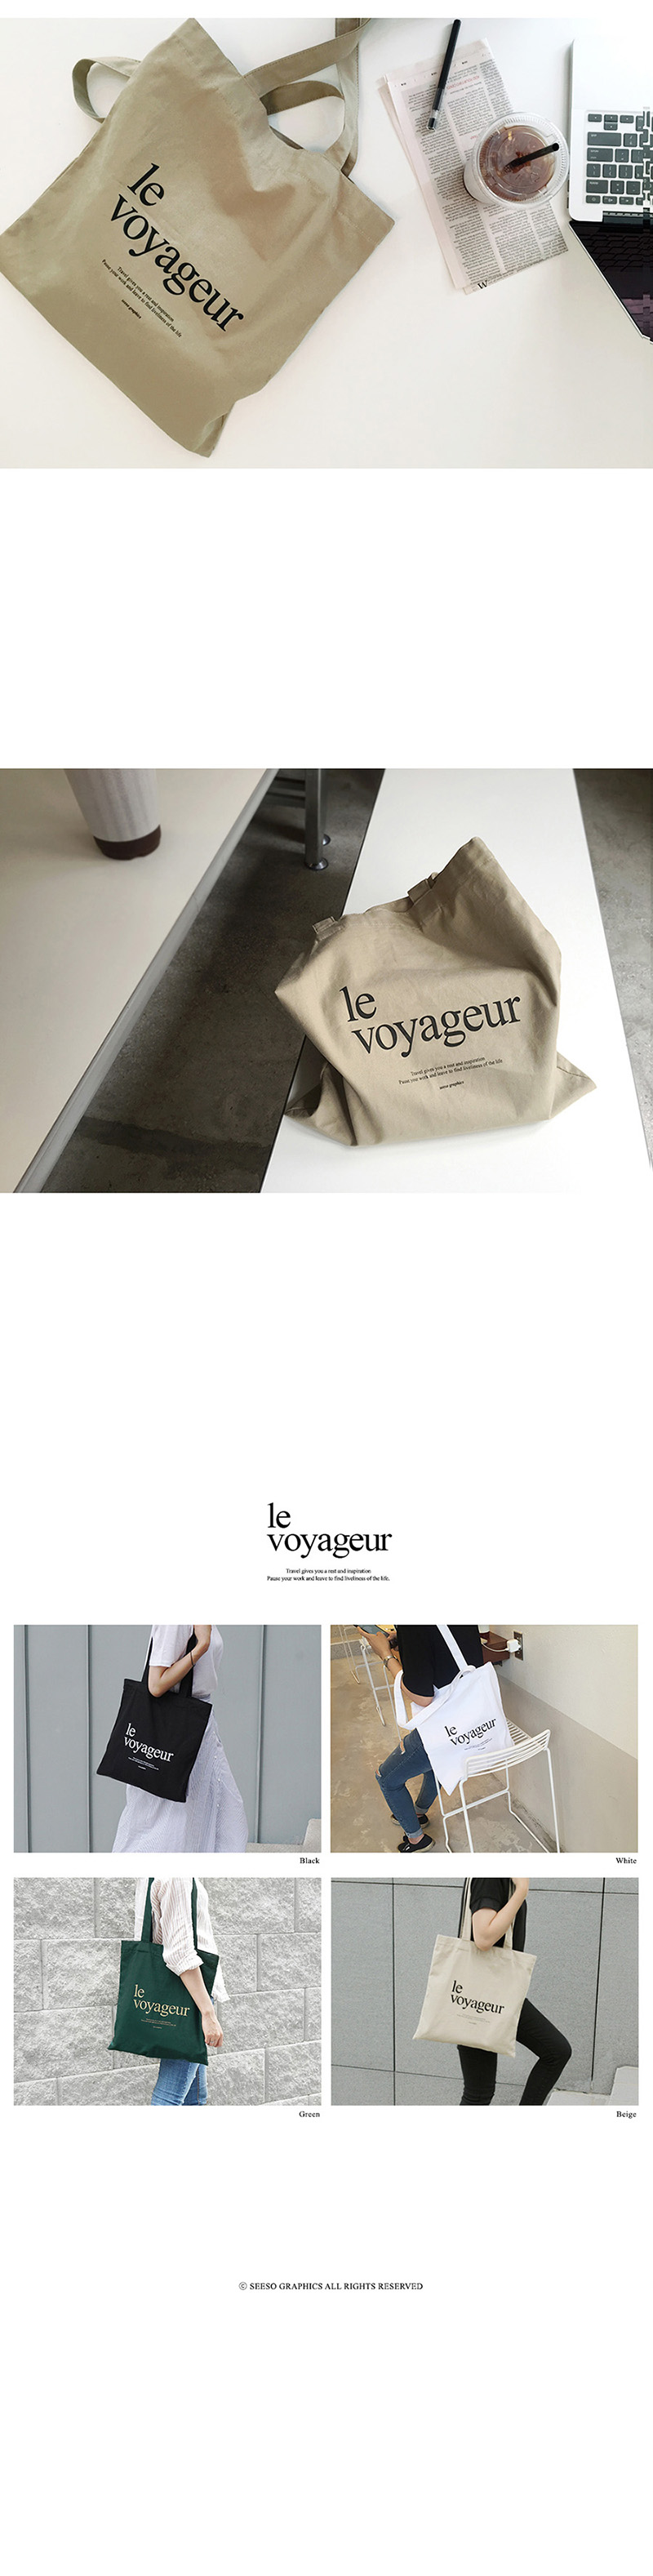 le voyageur_eco bag - BEIGE 24,000원 - 시소 패션잡화, 여성가방, 에코백, 레터링 바보사랑 le voyageur_eco bag - BEIGE 24,000원 - 시소 패션잡화, 여성가방, 에코백, 레터링 바보사랑